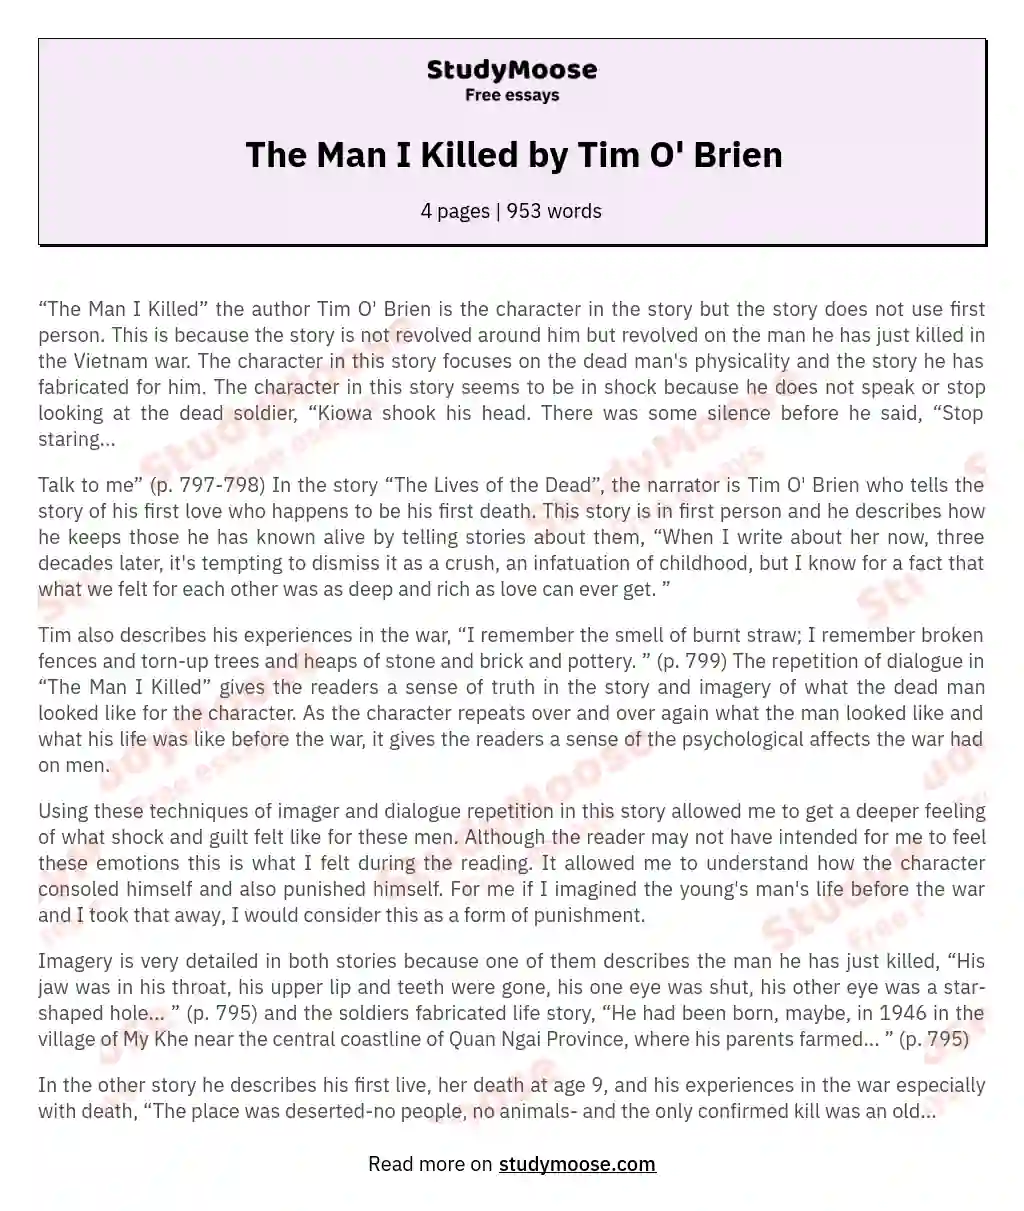 The Man I Killed by Tim O' Brien essay